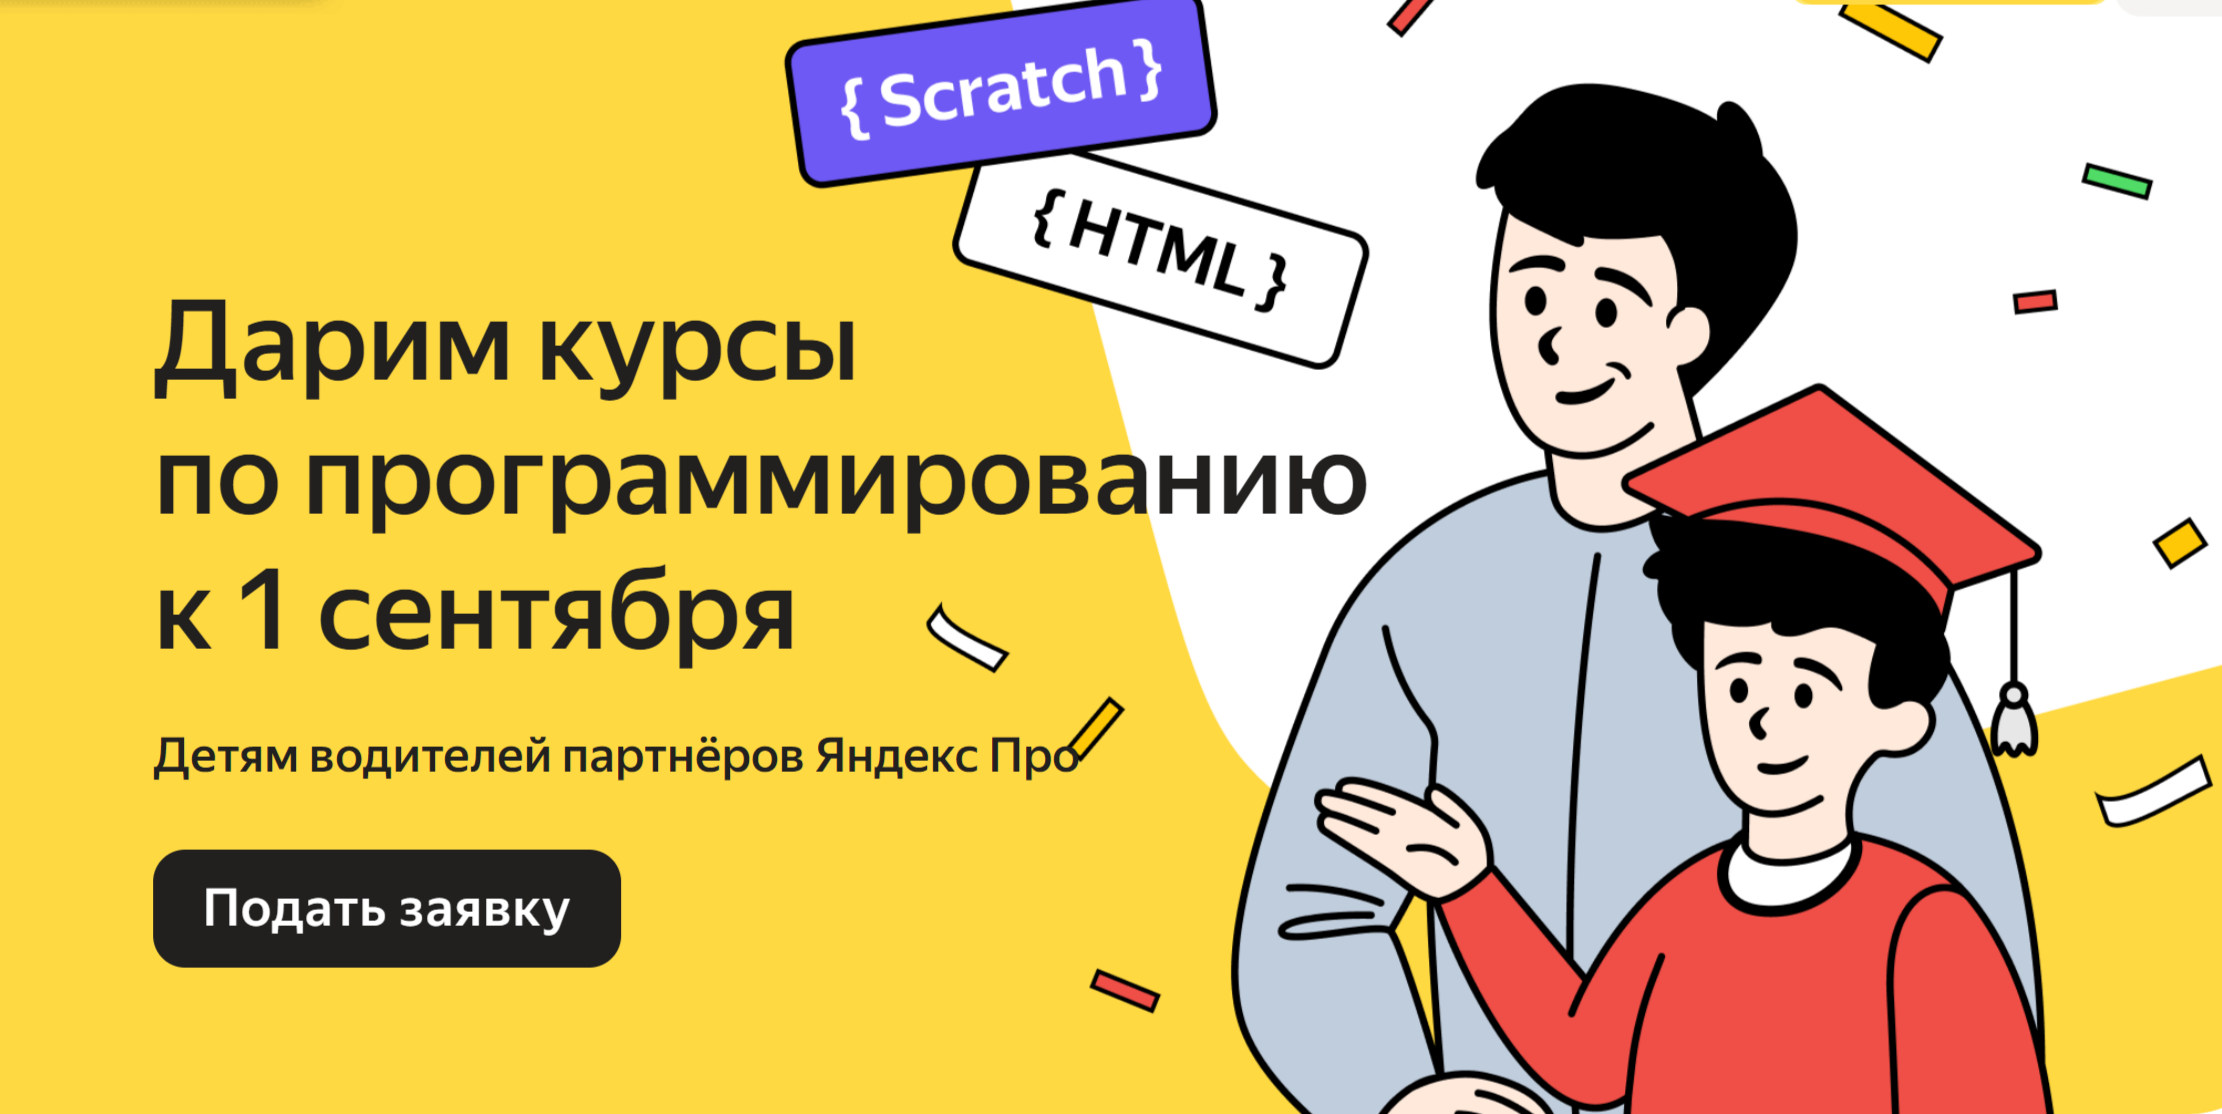 Яндекс Go подарит IT-курсы детям водителей к 1 сентября